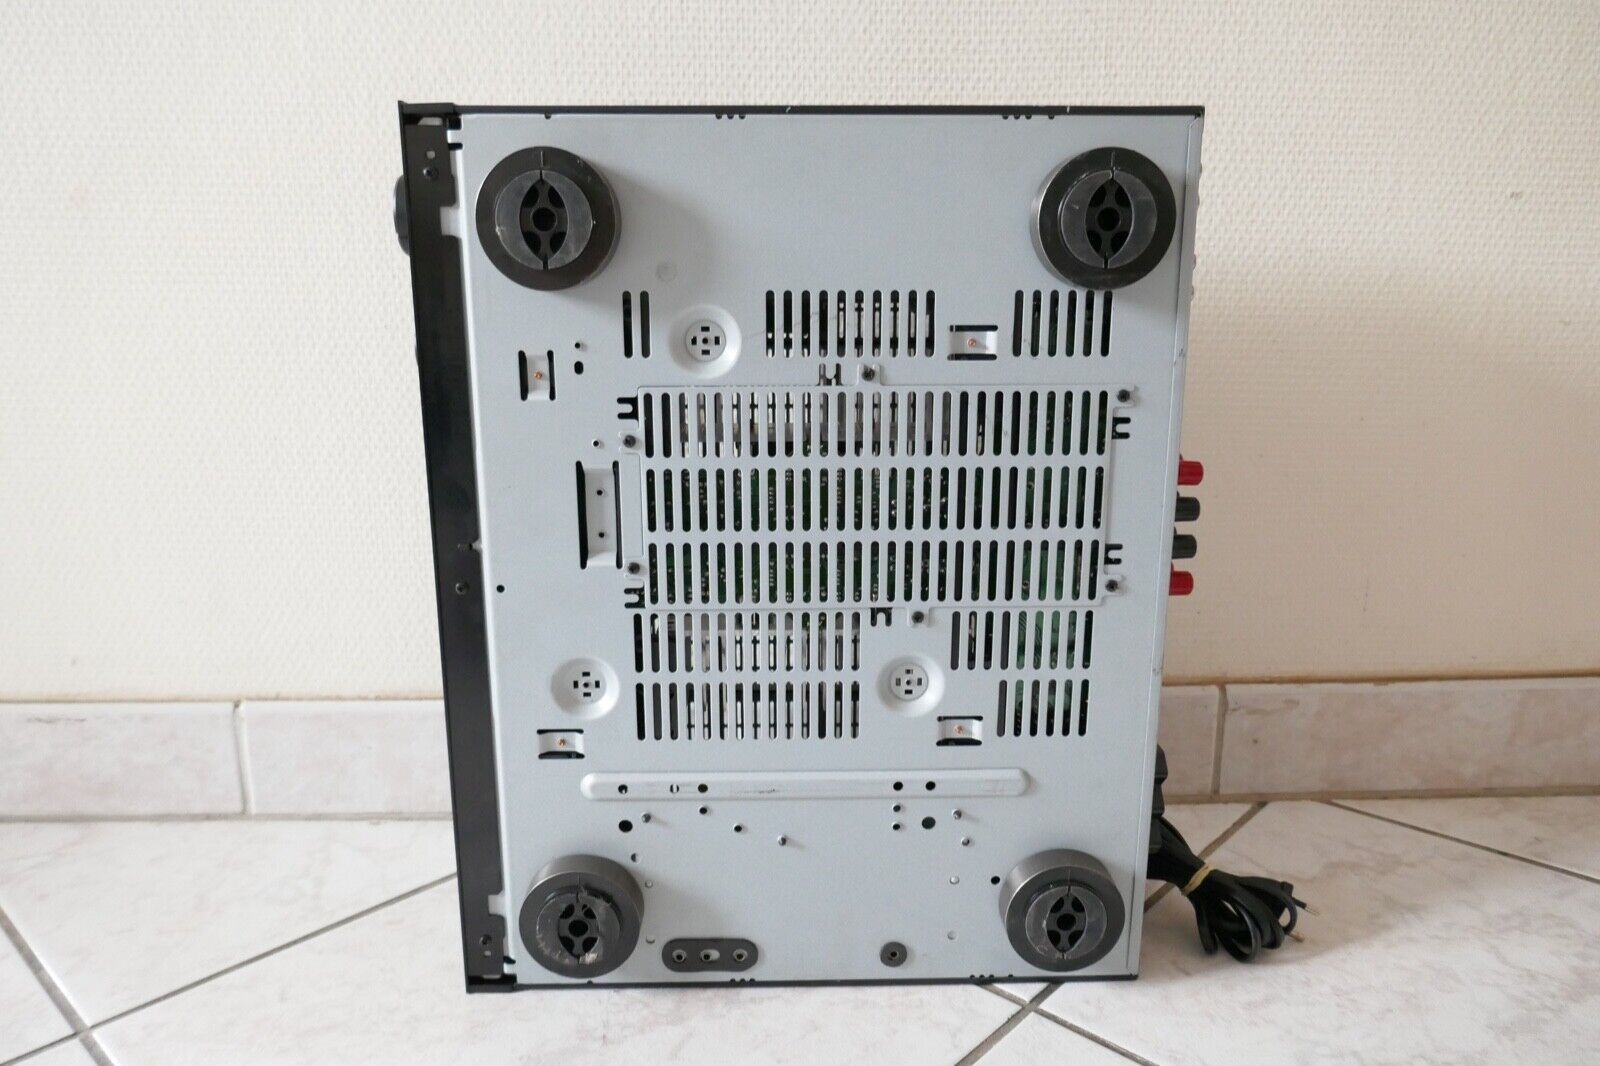 amplificateur amplifier Yamaha ax-396 vintage occasion